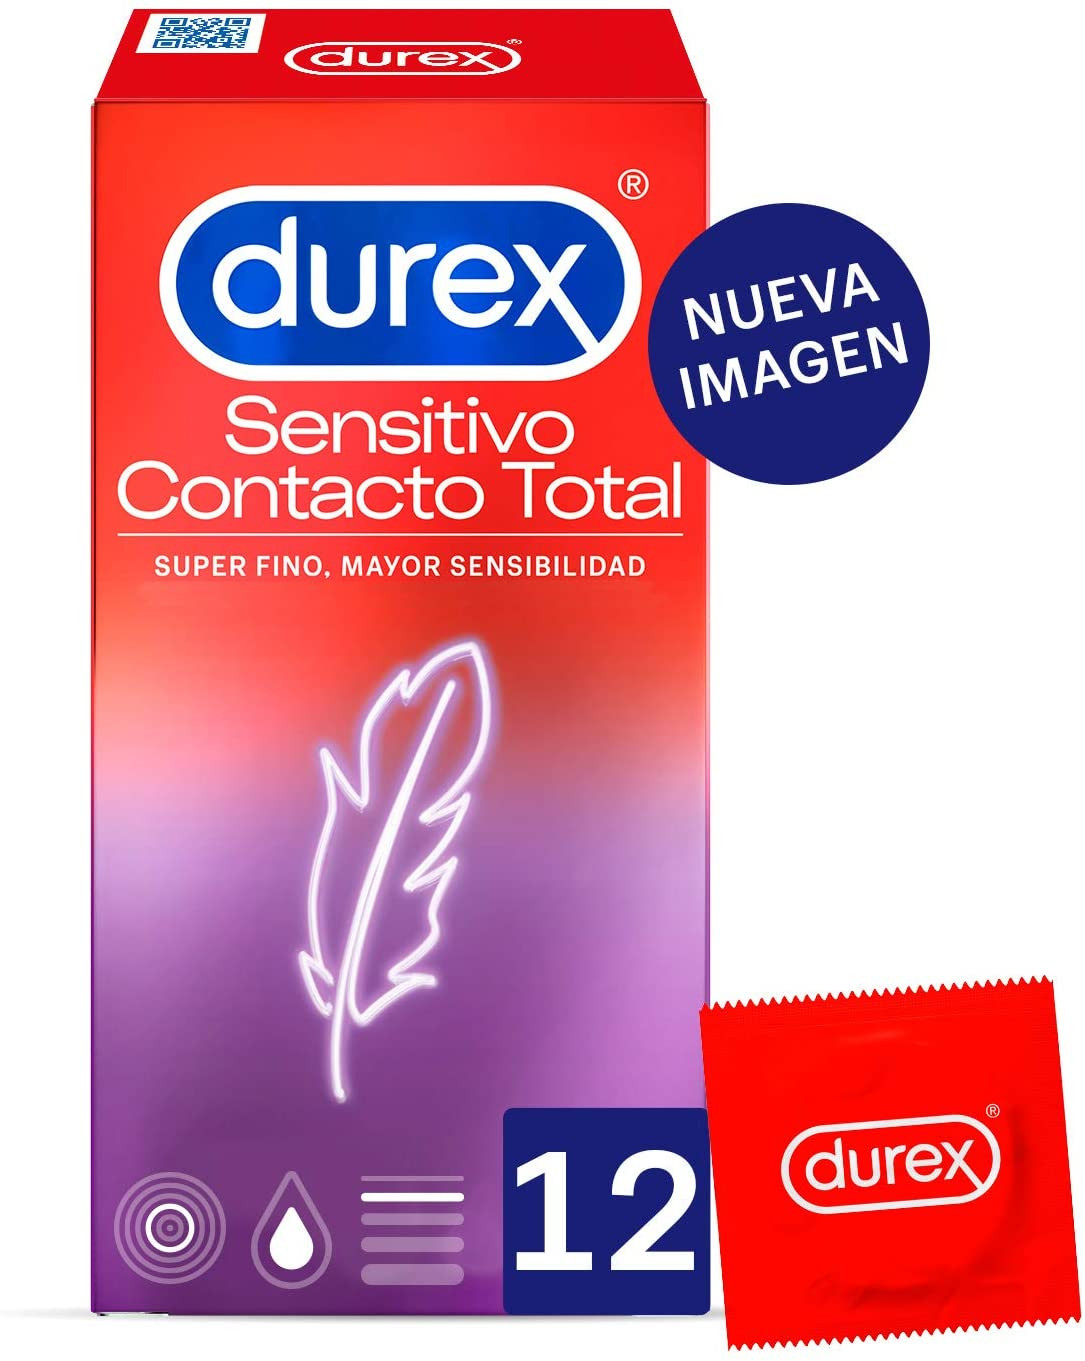 Les préservatifs Durex...